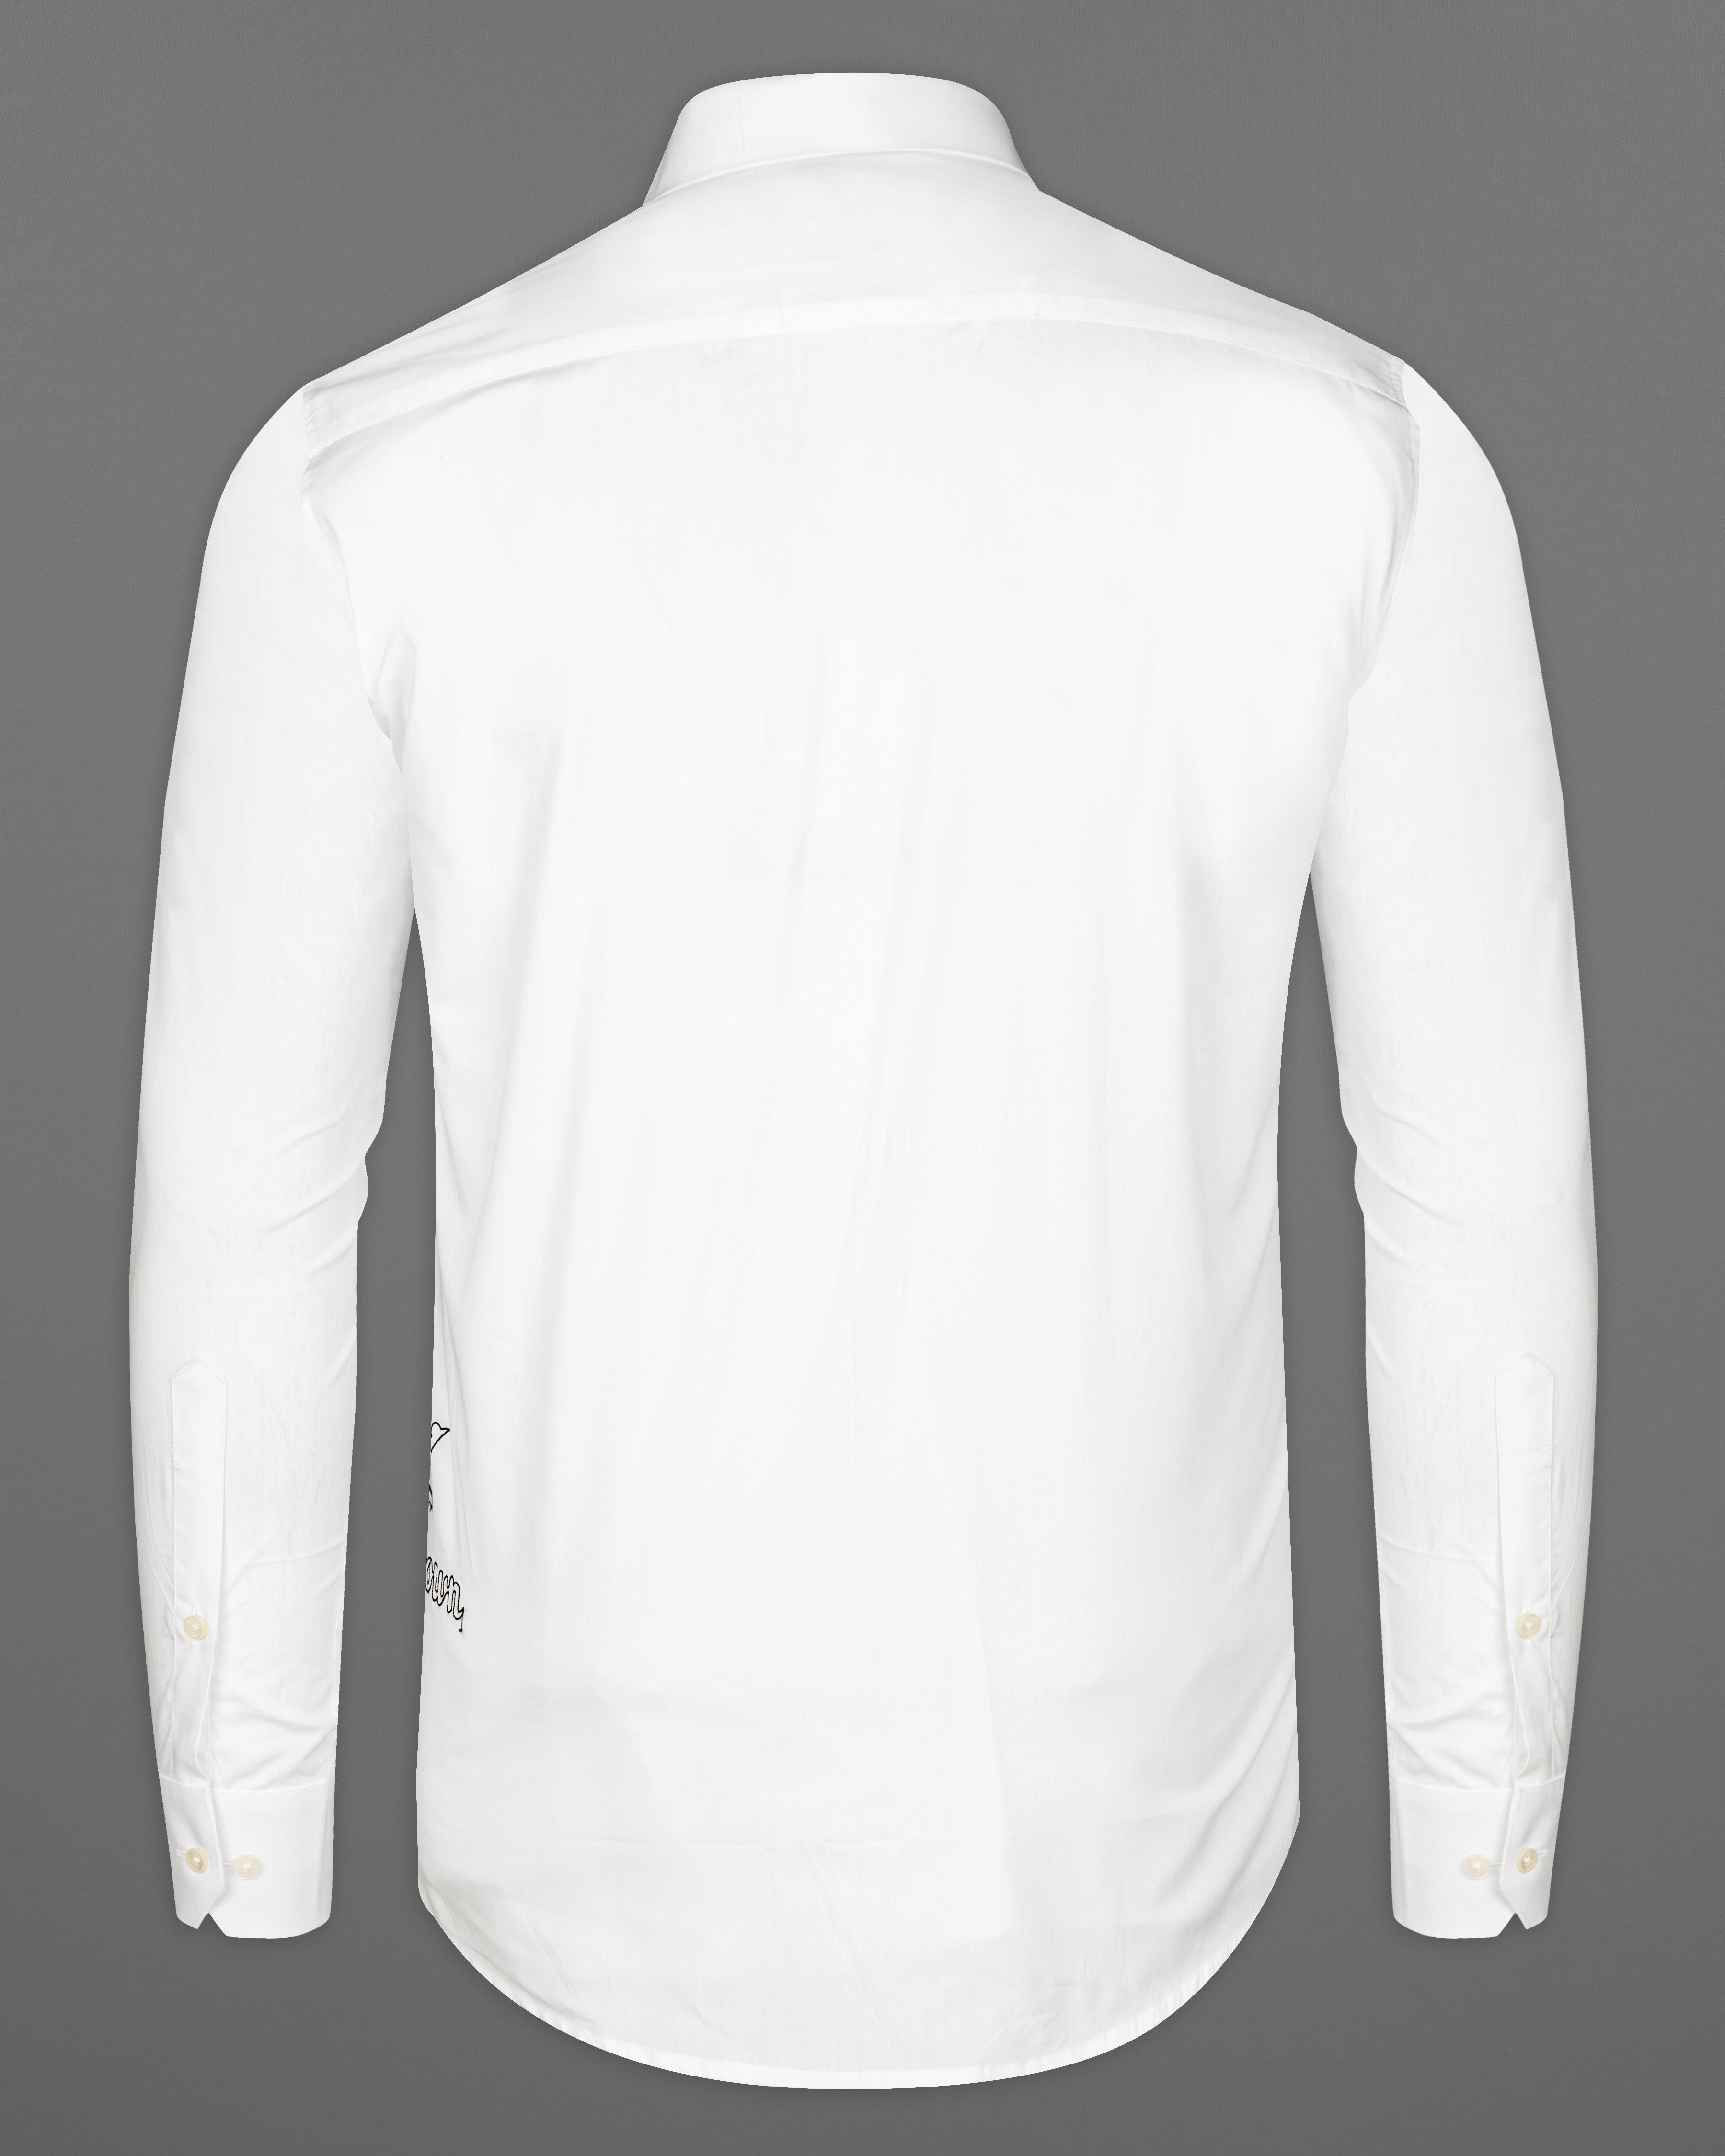 Bright White Subtle Sheen Signature Embroidered Super Soft Premium Cotton Shirt 9484-E066-38, 9484-E066-H-38, 9484-E066-39, 9484-E066-H-39, 9484-E066-40, 9484-E066-H-40, 9484-E066-42, 9484-E066-H-42, 9484-E066-44, 9484-E066-H-44, 9484-E066-46, 9484-E066-H-46, 9484-E066-48, 9484-E066-H-48, 9484-E066-50, 9484-E066-H-50, 9484-E066-52, 9484-E066-H-52